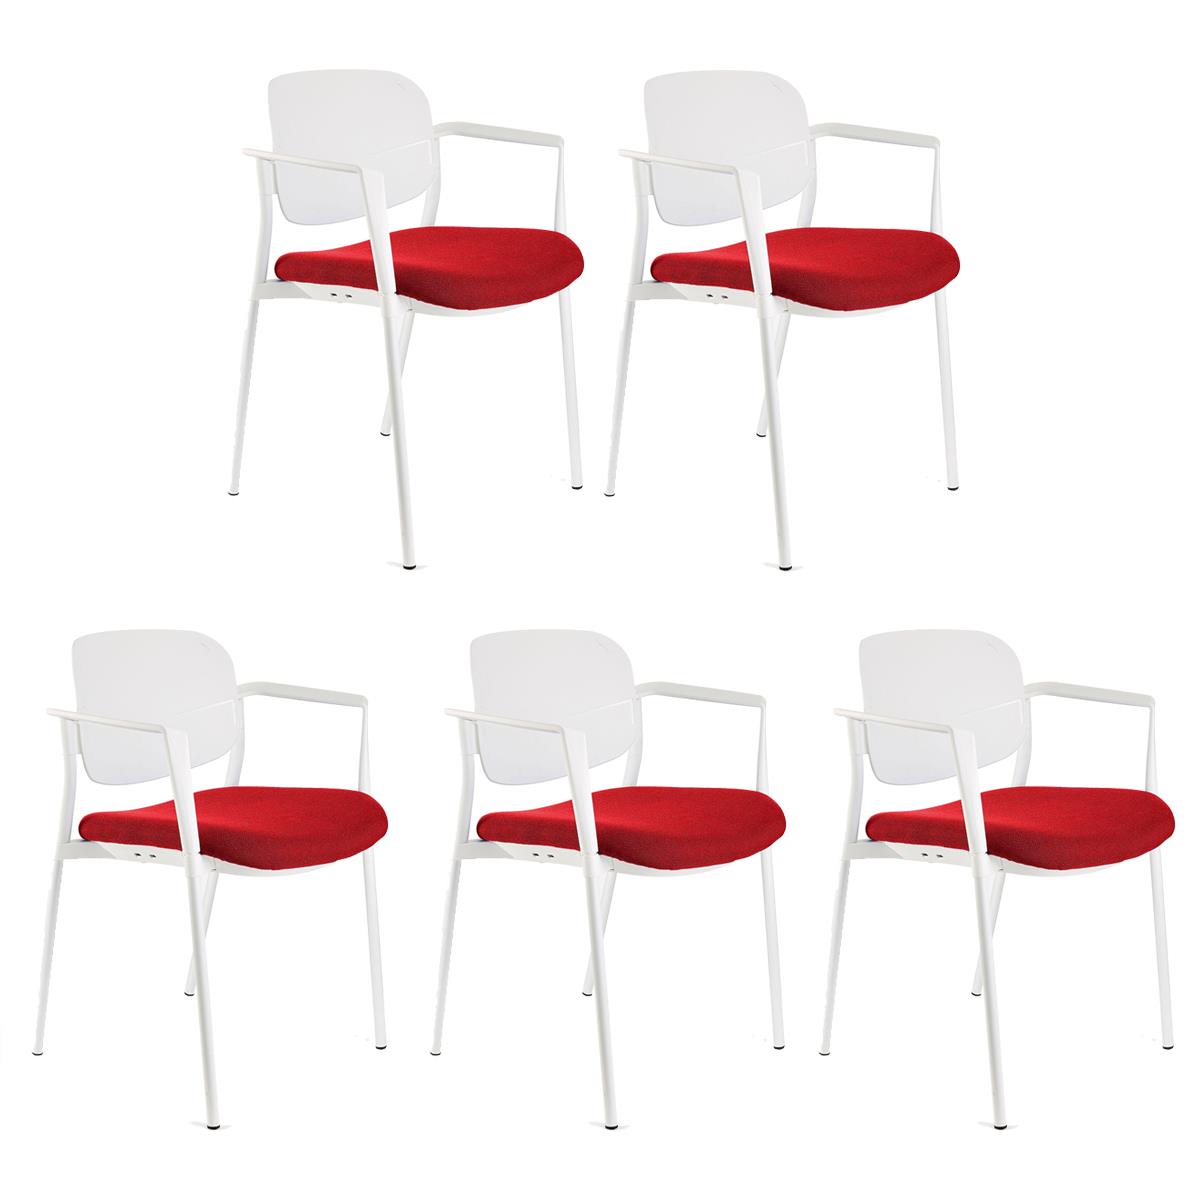 Lote 5 Cadeiras de Visita ERIC COM BRAÇOS, Confortável e Empilhável, Cor Vermelho